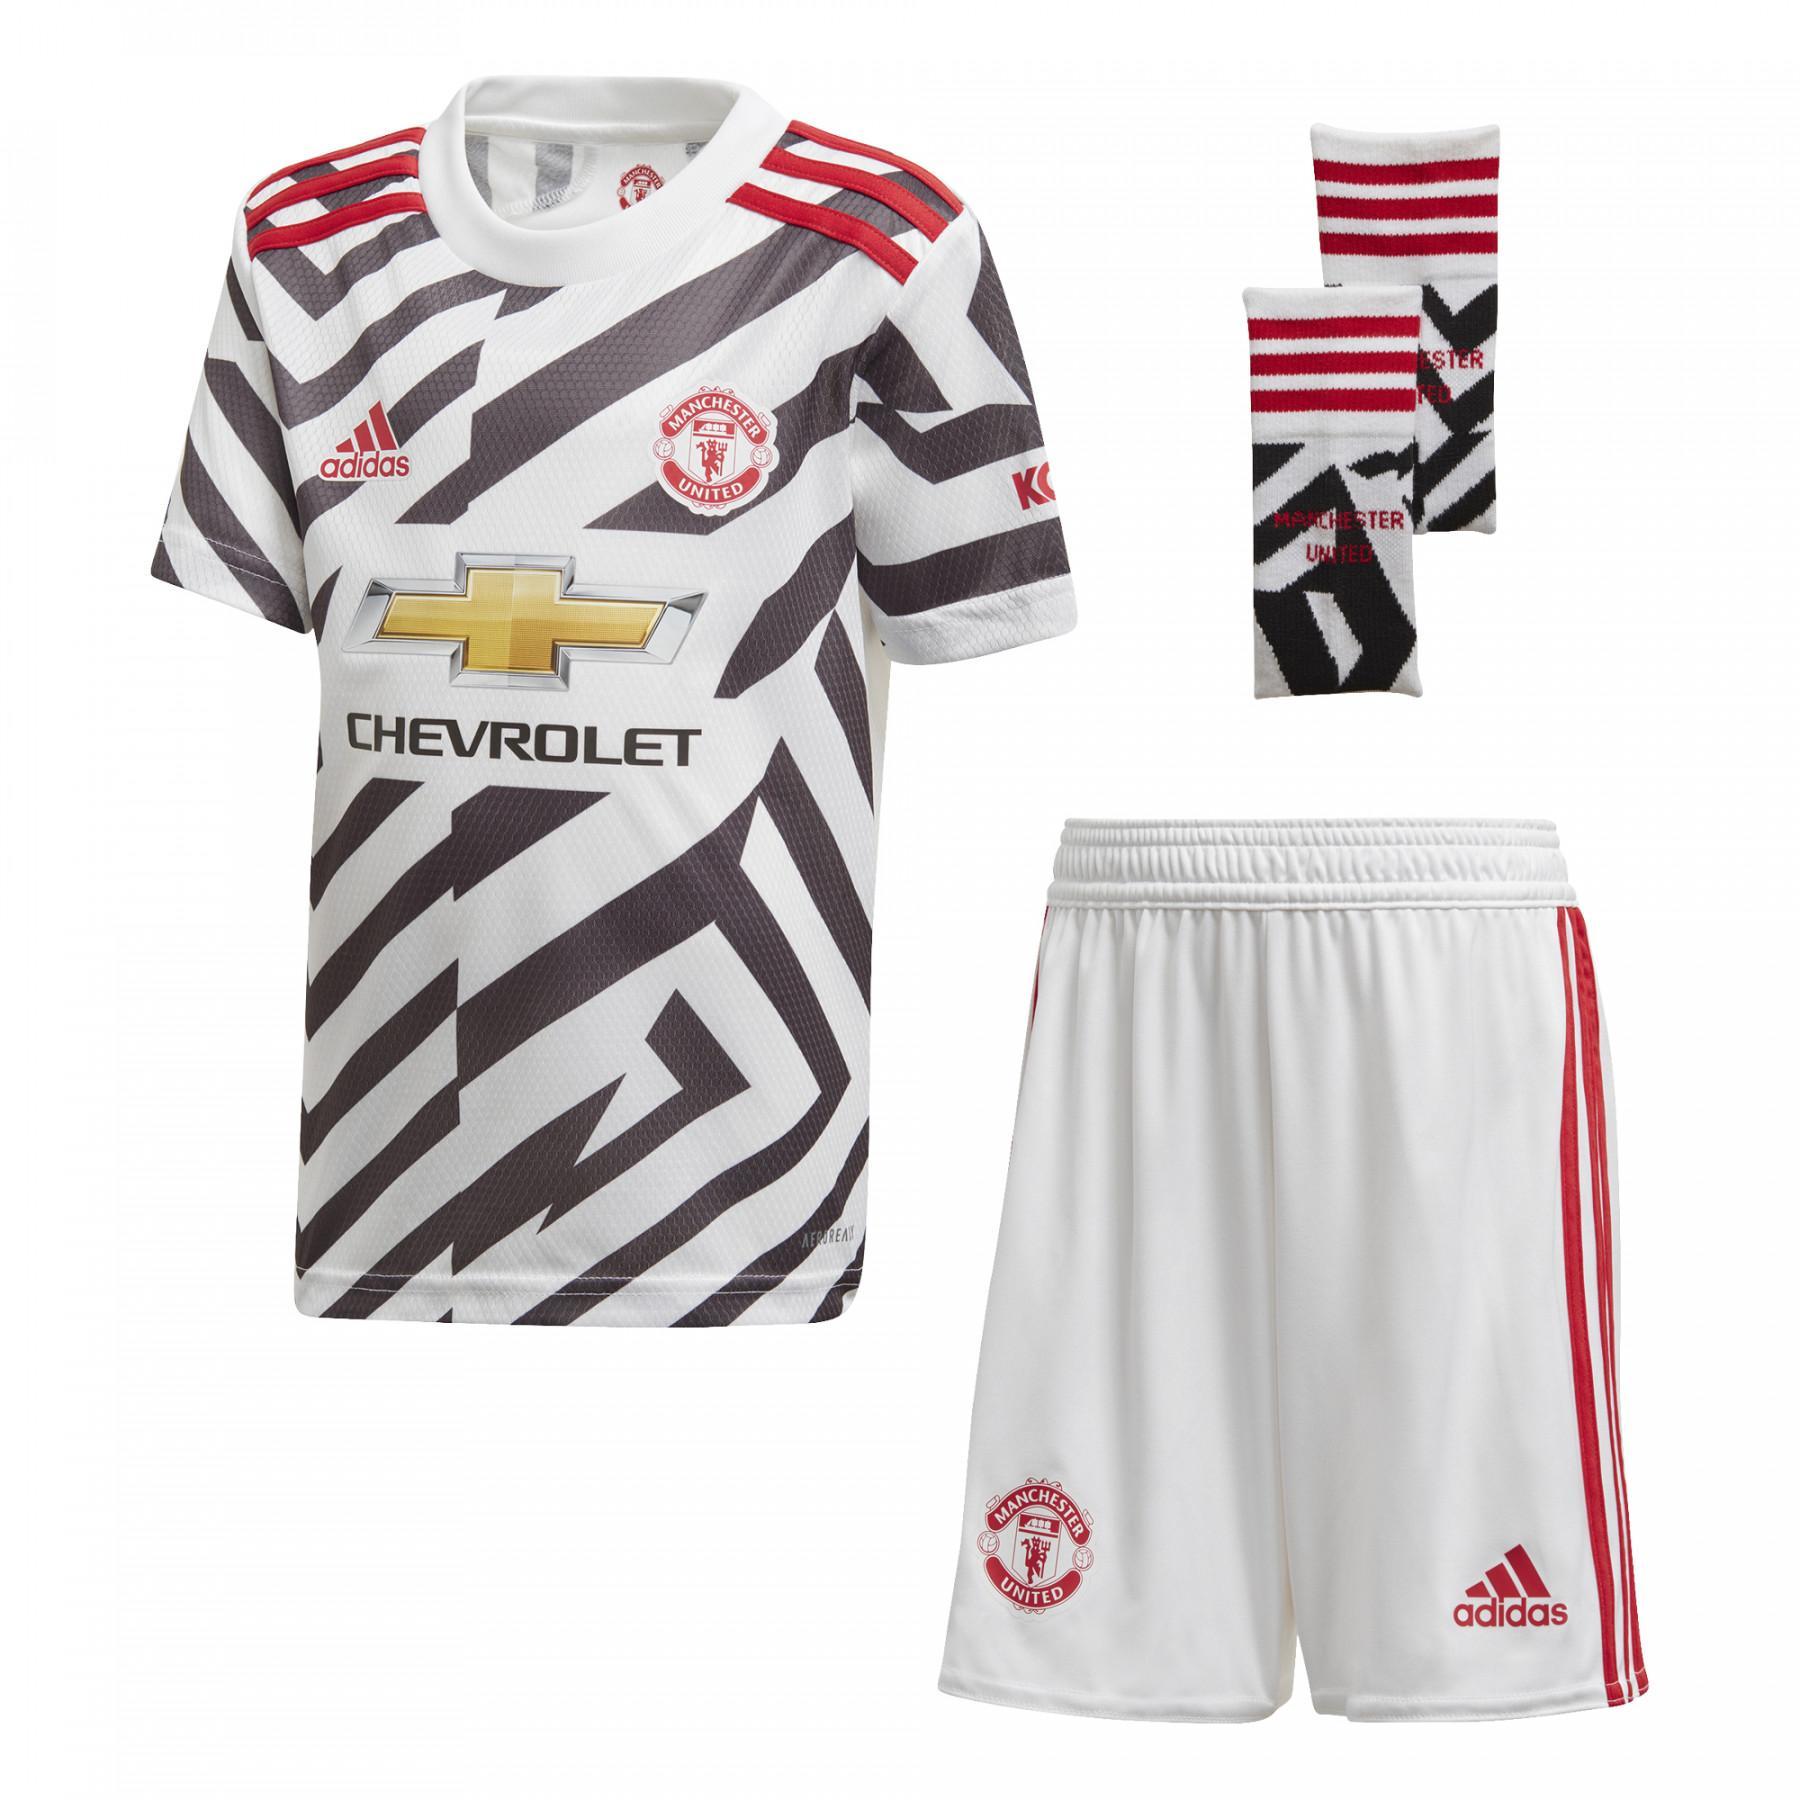 Mini-kit third Manchester United 2020/21